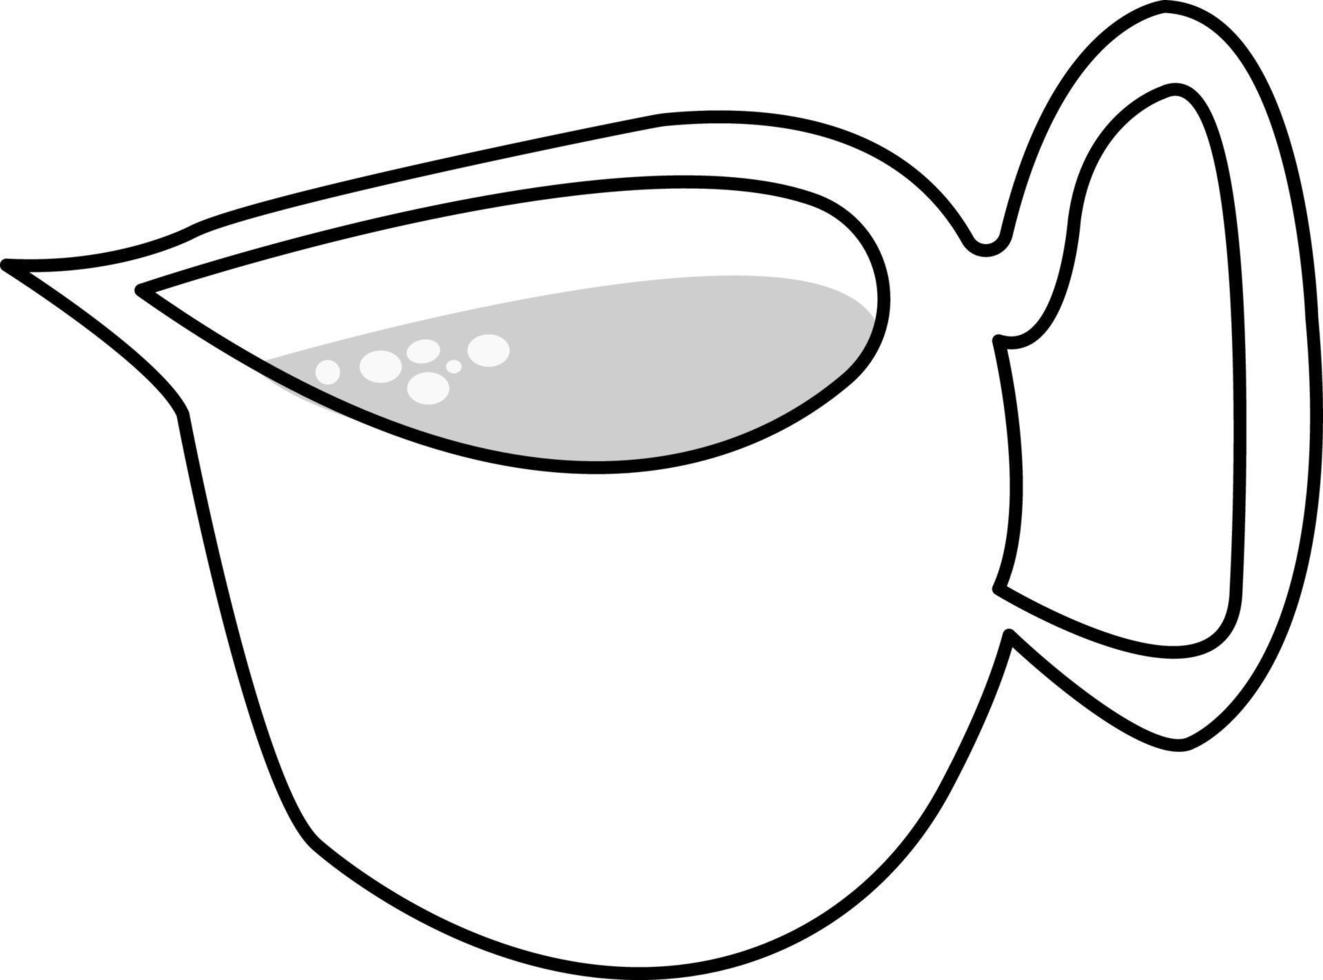 jarro de leite, ilustração em vetor desenho estilo doodle. fundo branco